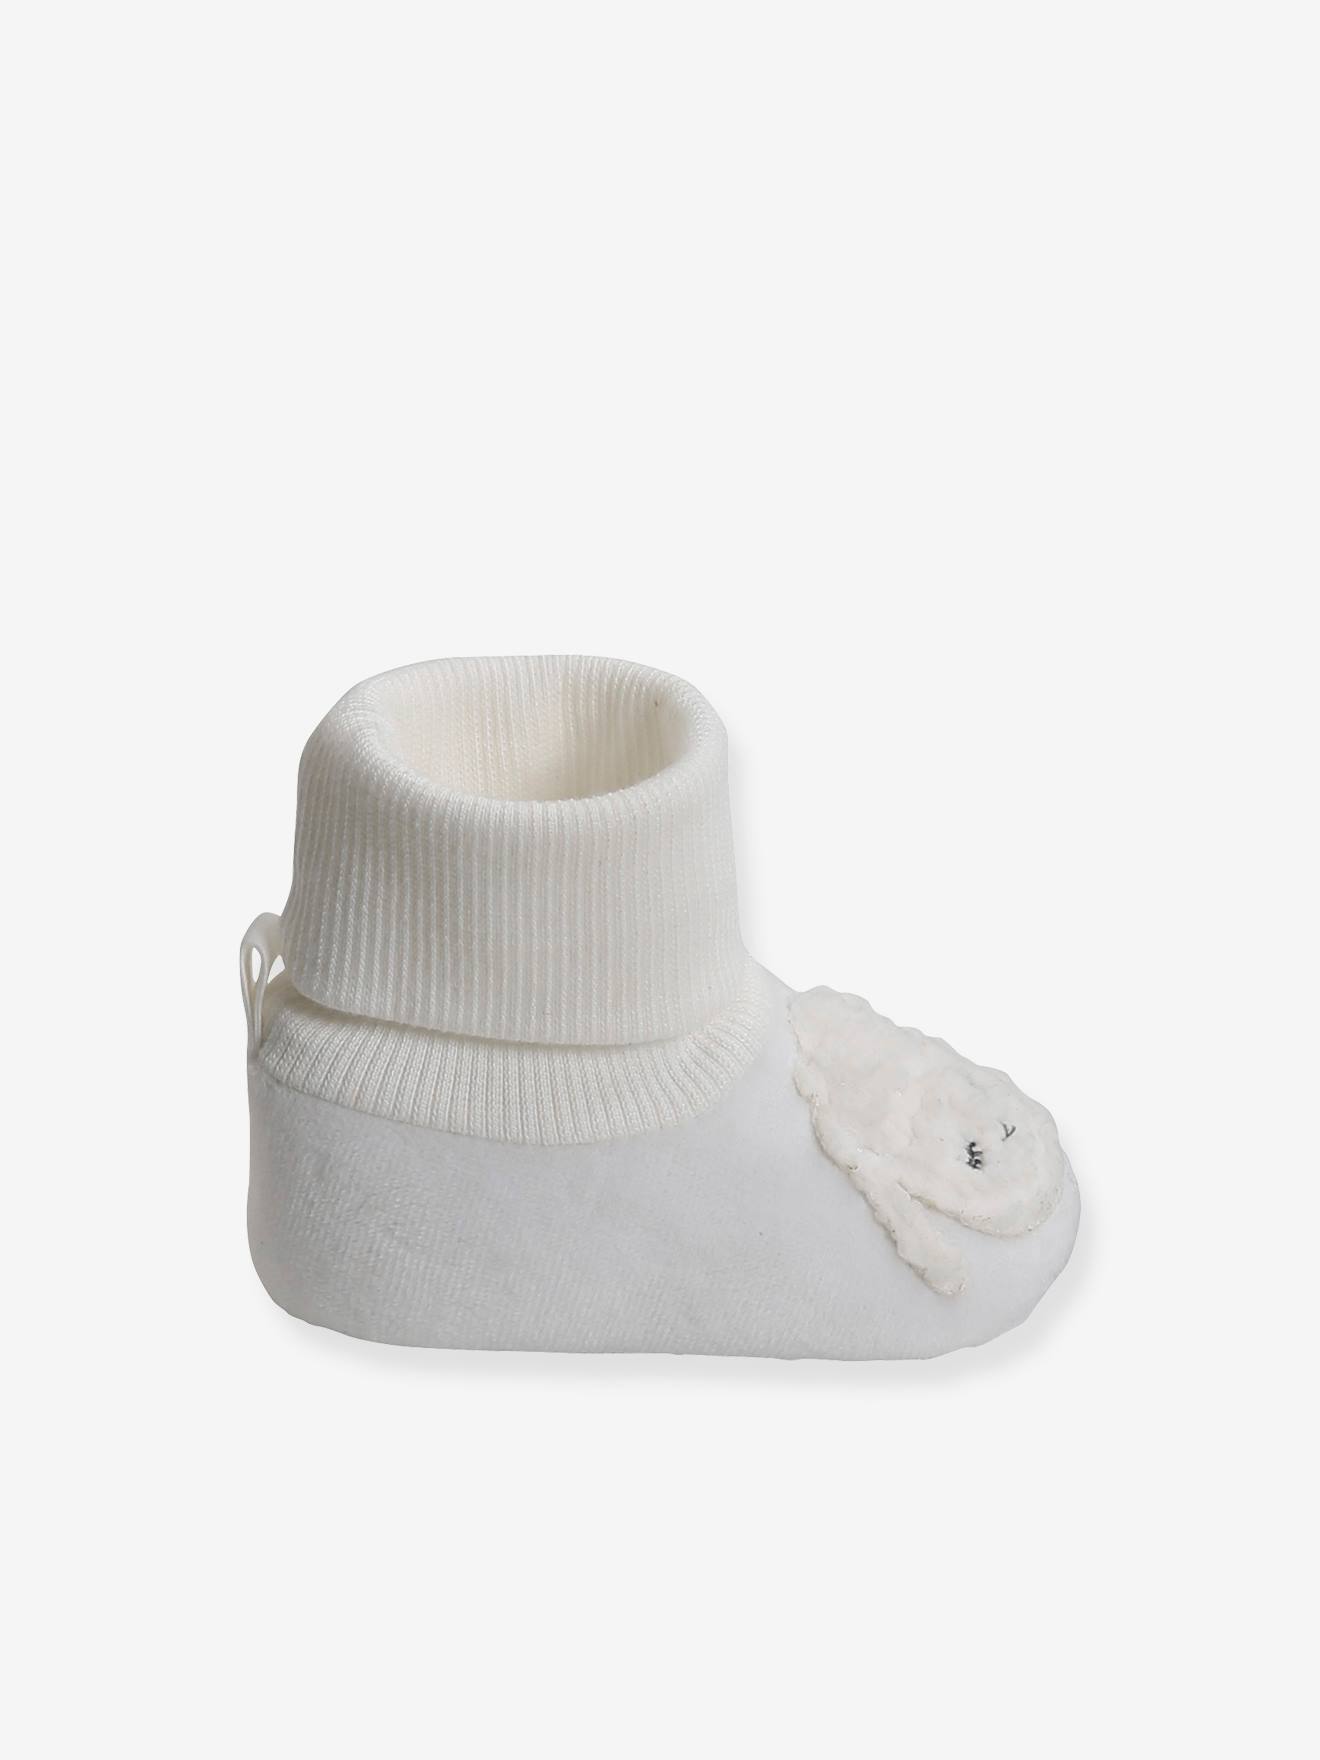 Chaussons chaussettes bébé 0-6 mois toile et tissu